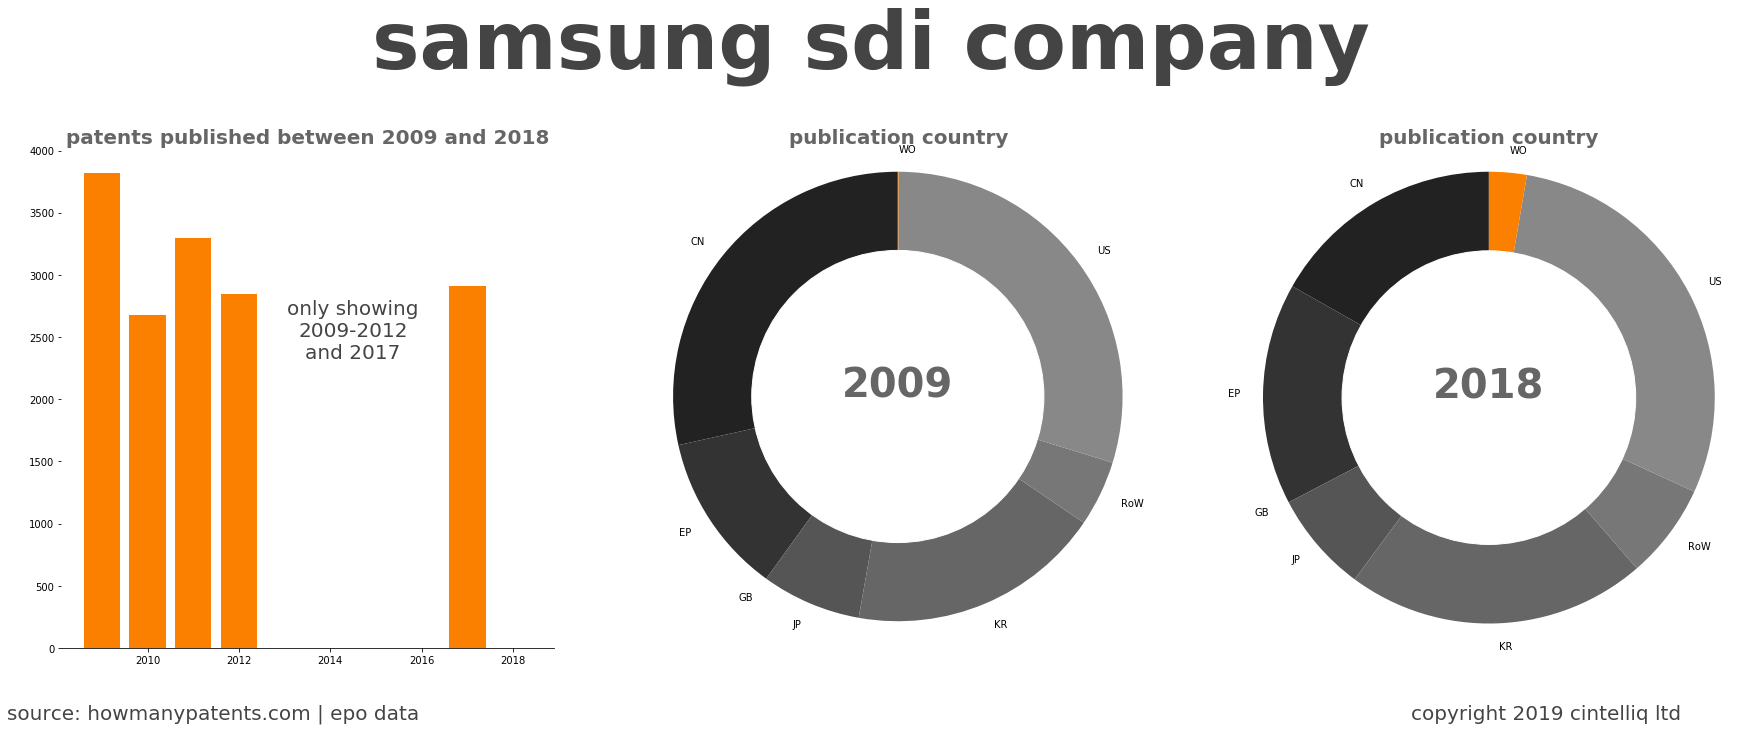 summary of patents for Samsung Sdi Company